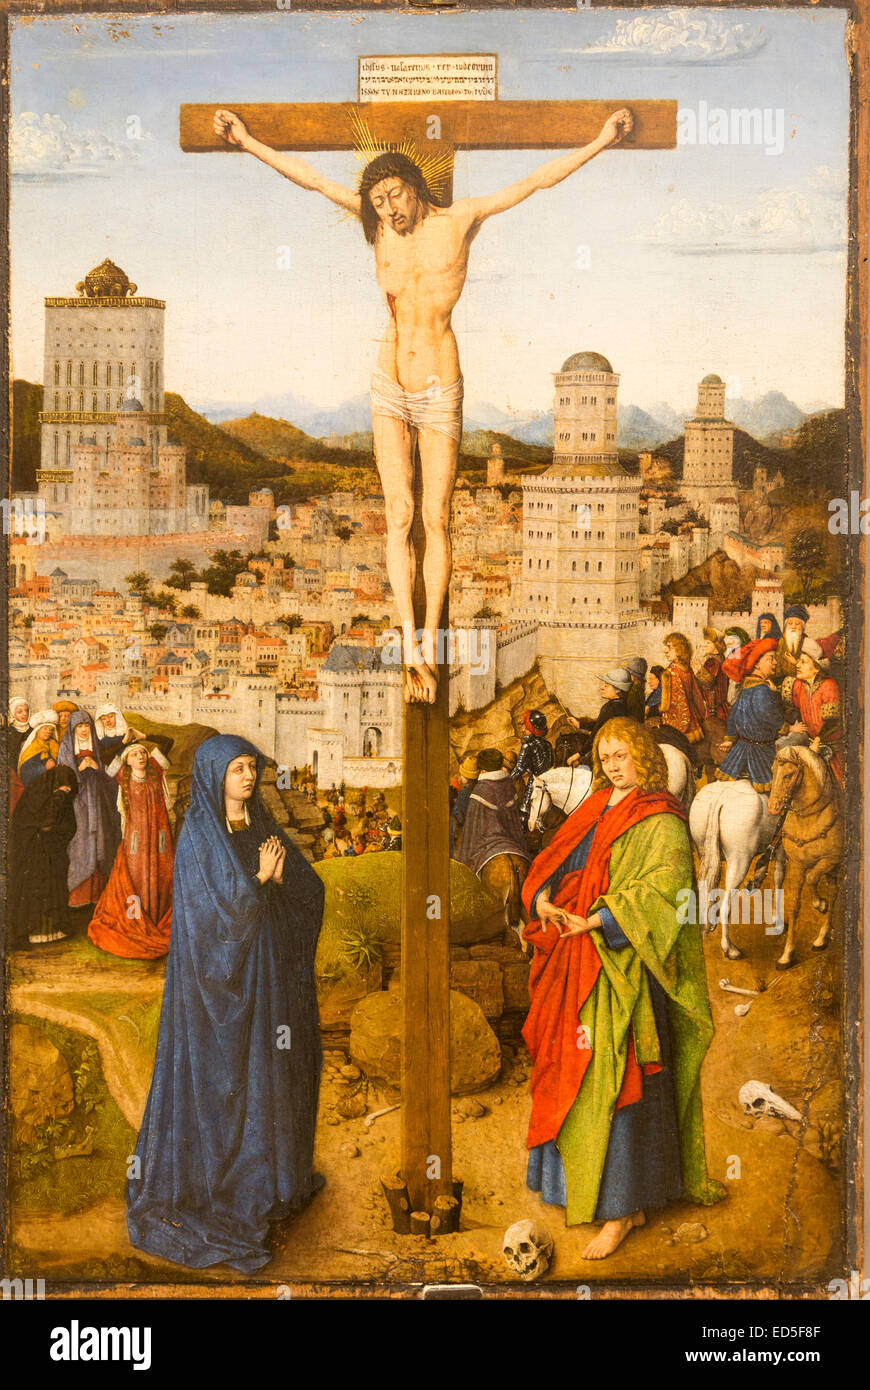 Crucifixion, school of Van Eyck, Ca' d'Oro (correctly Palazzo Santa Sofia) palace, Grand Canal, Venice, Italy Stock Photo